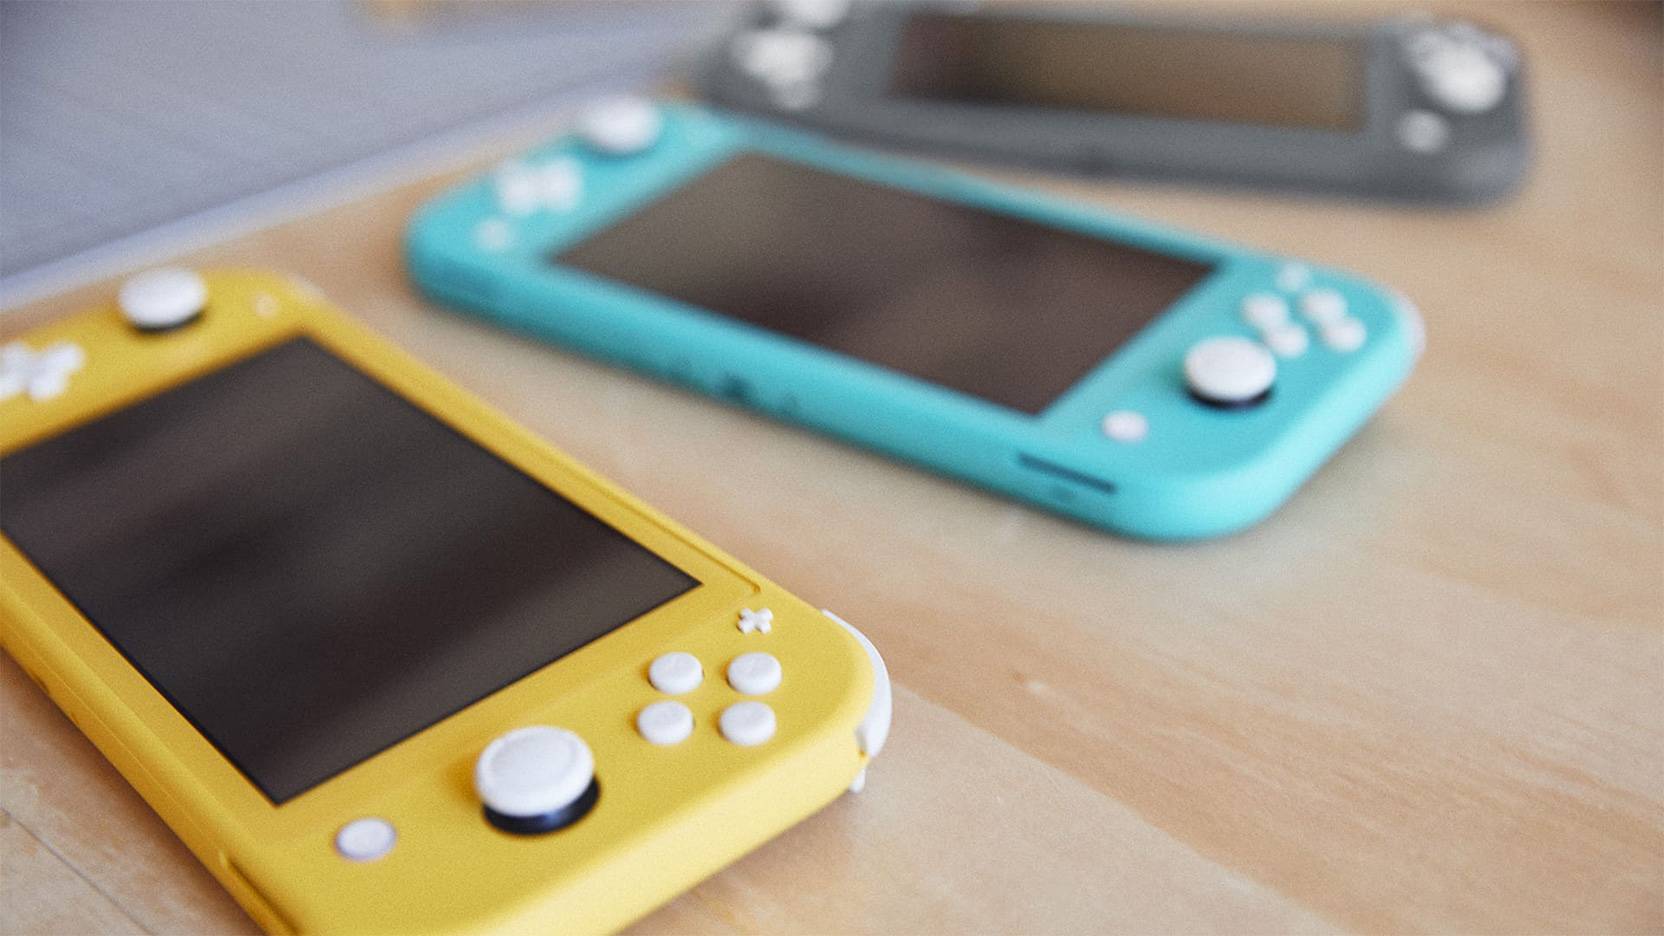 Nintendo Switch Lite - alt du behøver vide om konsollen